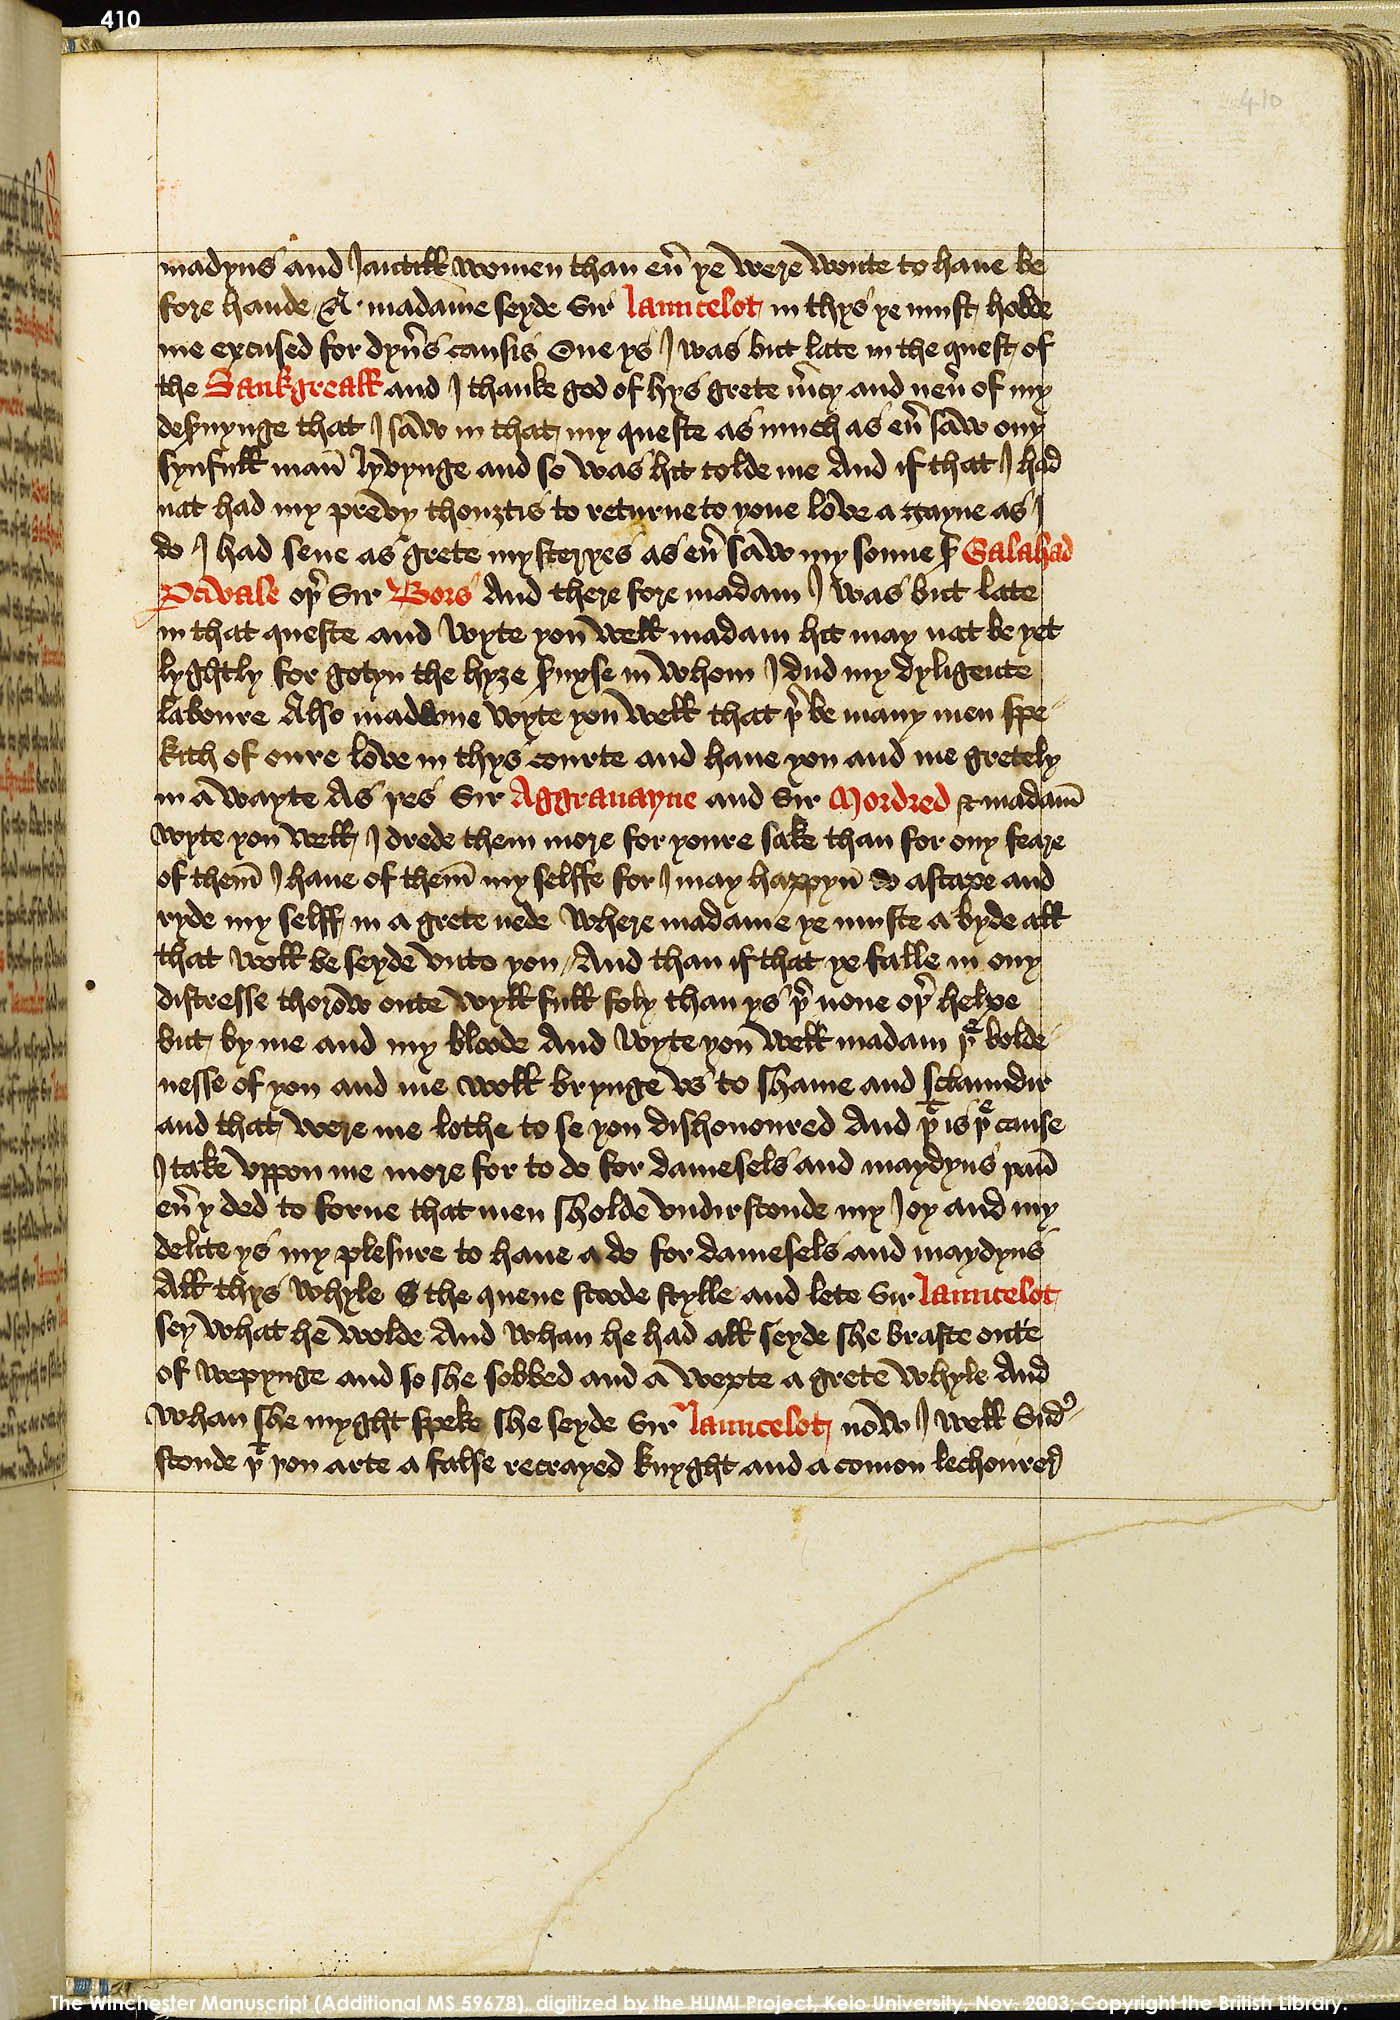 Folio 410r